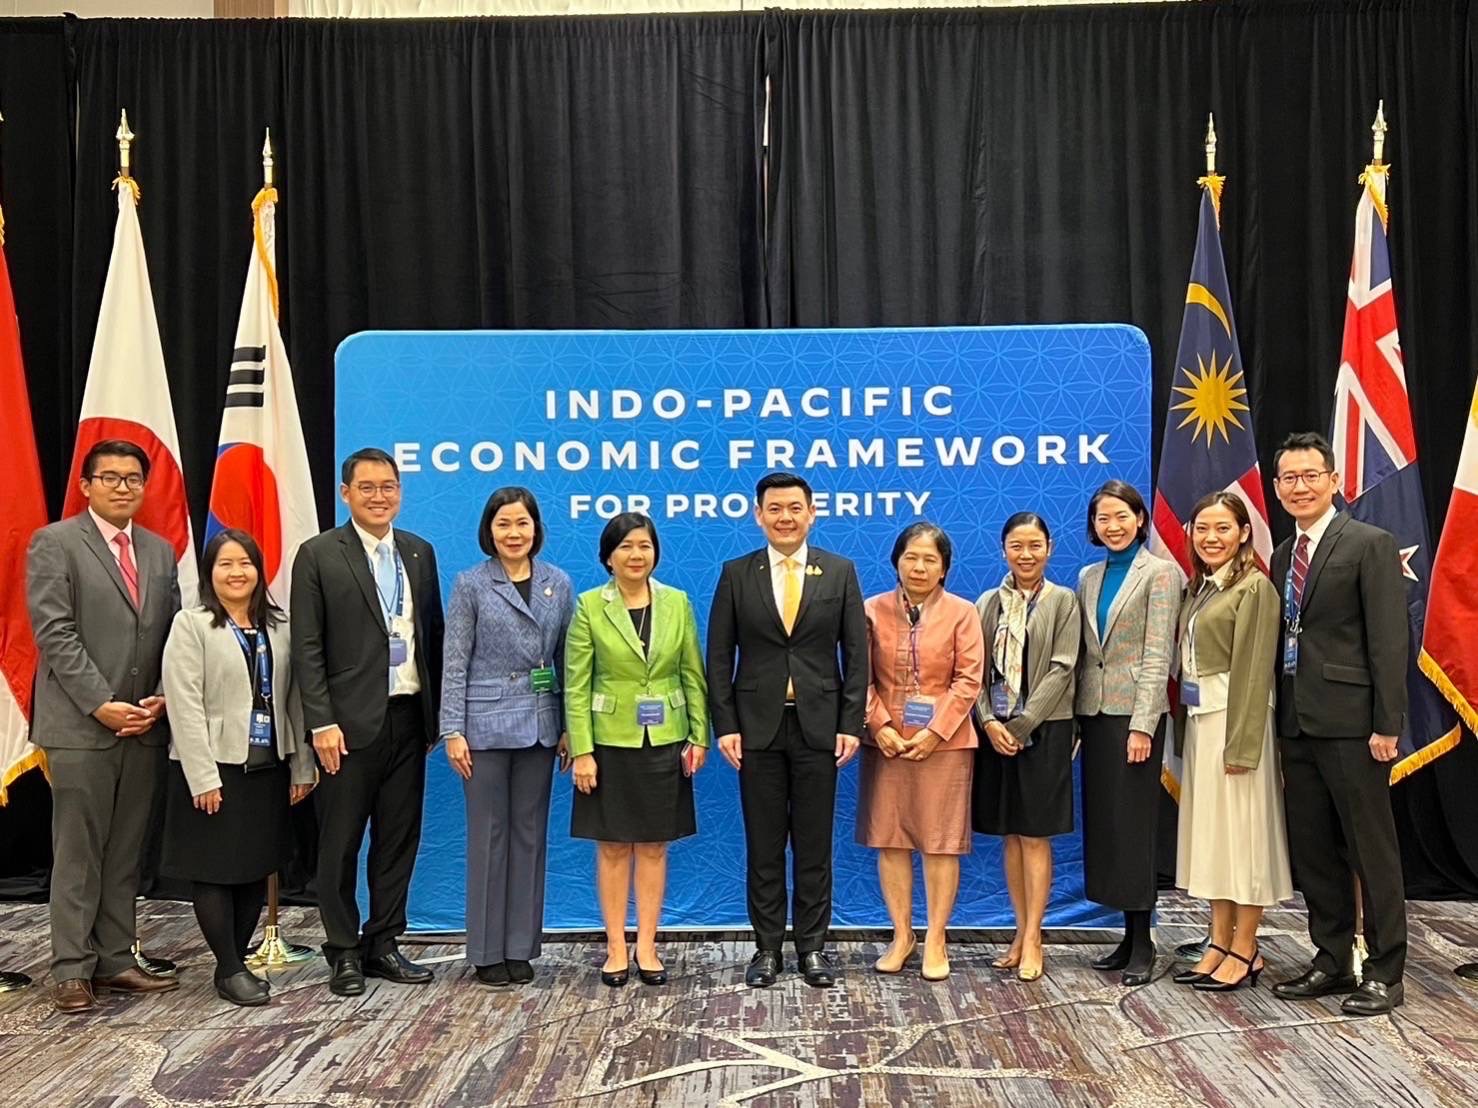 สศอ. ร่วมพิธีลงนามความตกลงกรอบความร่วมมือทางเศรษฐกิจอินโด-แปซิฟิก เพื่อความเจริญรุ่งเรืองว่าด้วยความเข้มแข็งของห่วงโซ่อุปทาน (Indo-Pacific Economic Framework for Prosperity Agreement Relating to Suppl